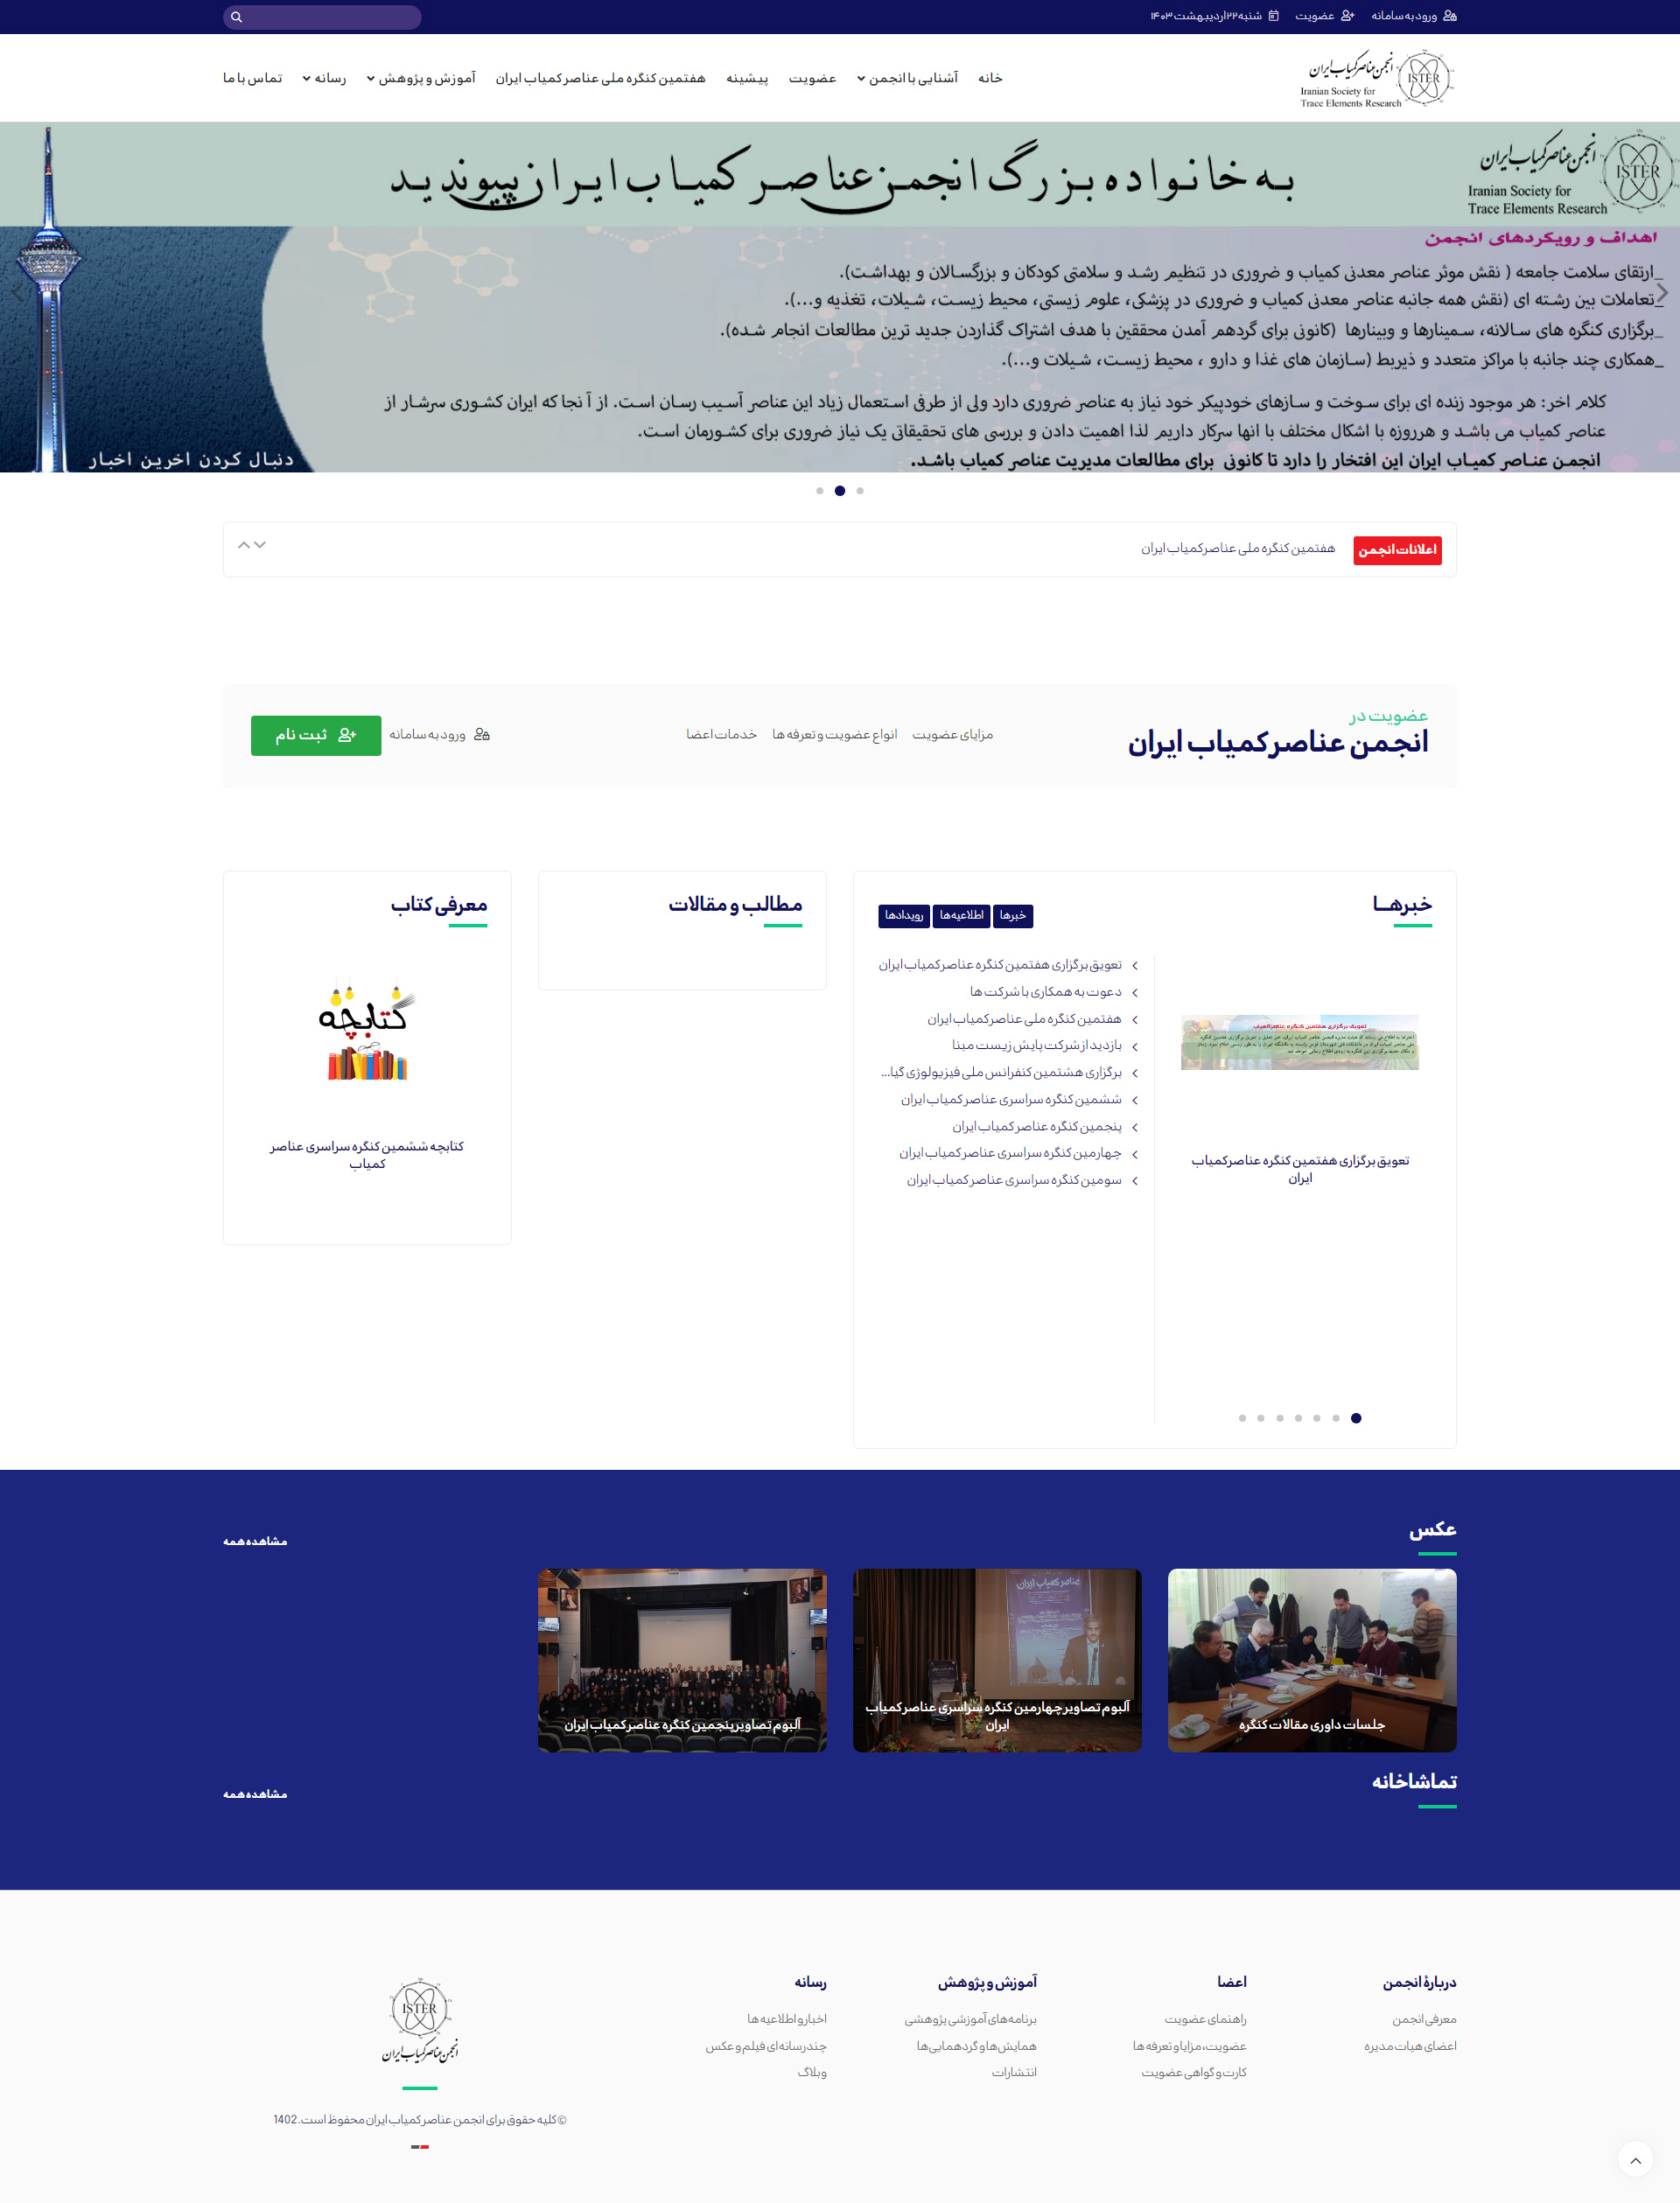 انجمن عناصر کمیاب ایران